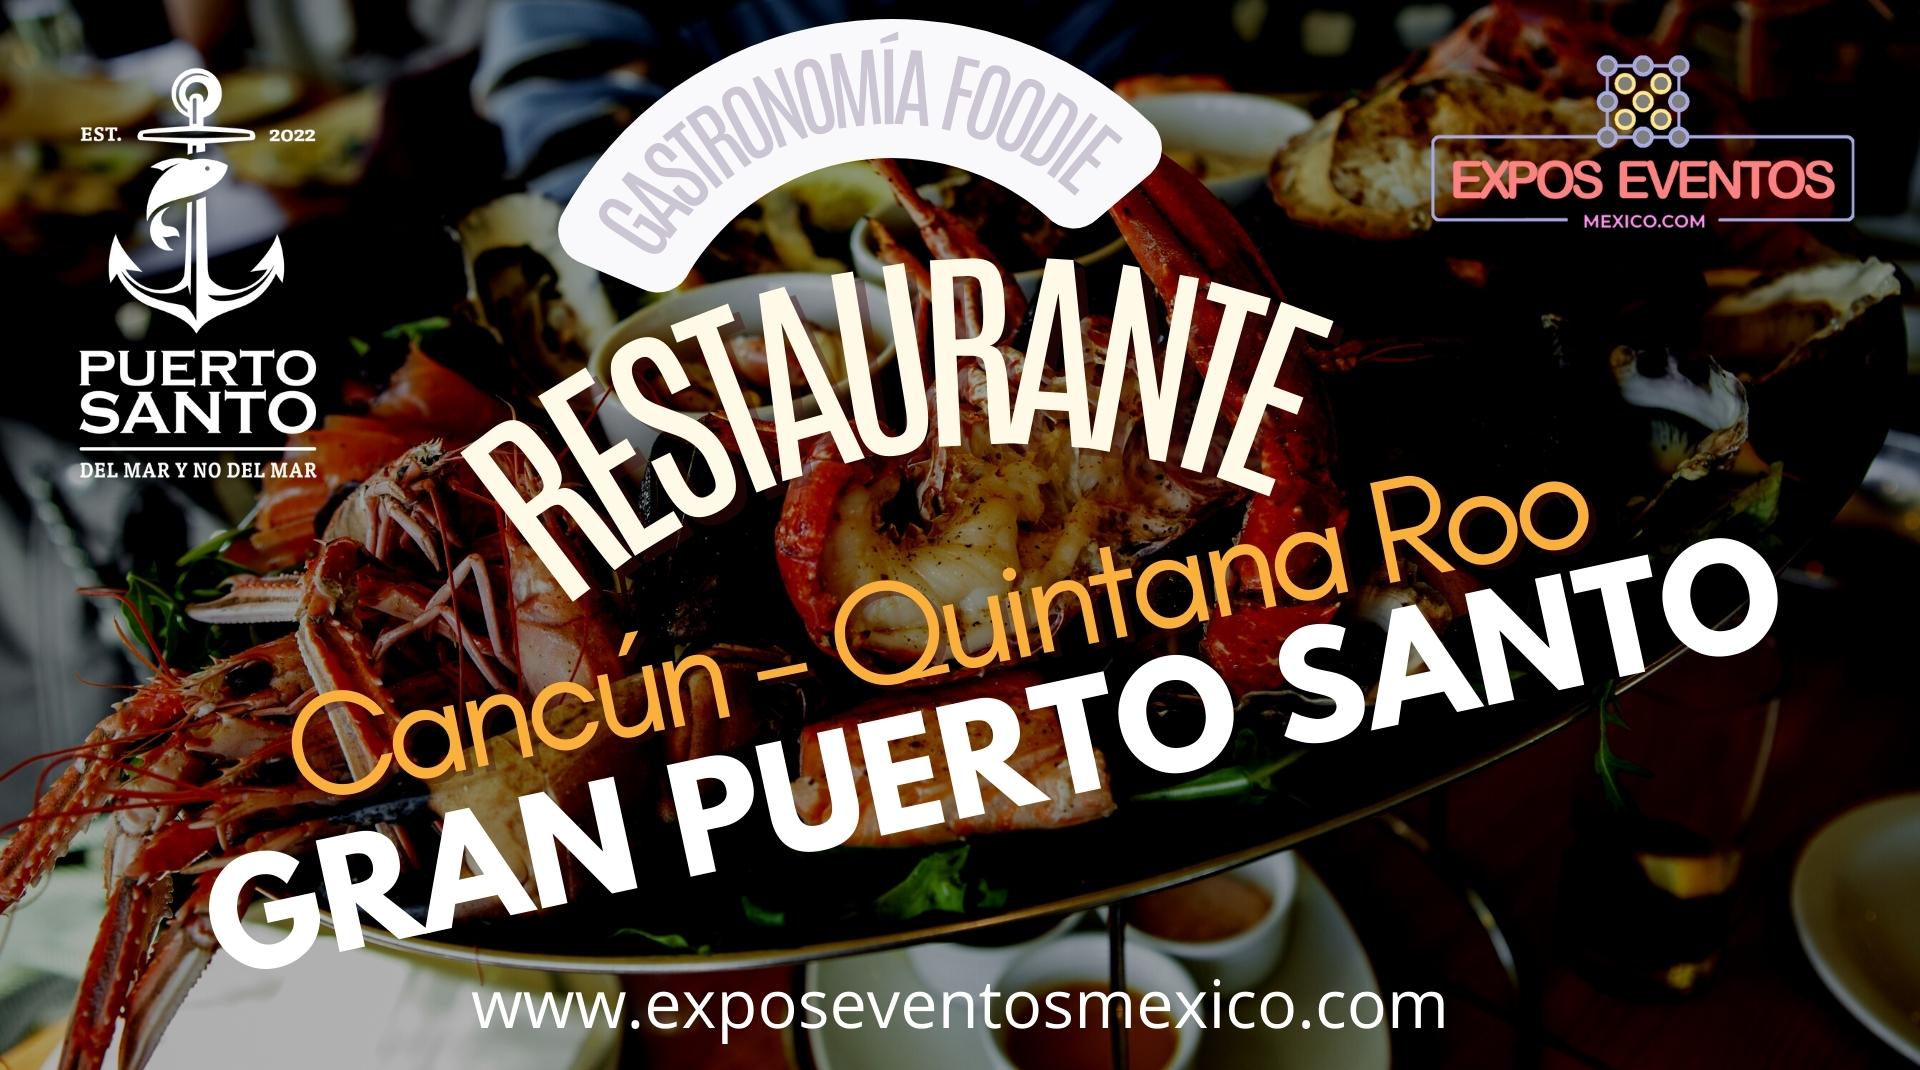 Restaurante Gran Puerto Santo Cancún Puerto Santo Marina Zona Hotelera Cancún Quintana Roo Plaza Comercial Marina Puerto Cancún